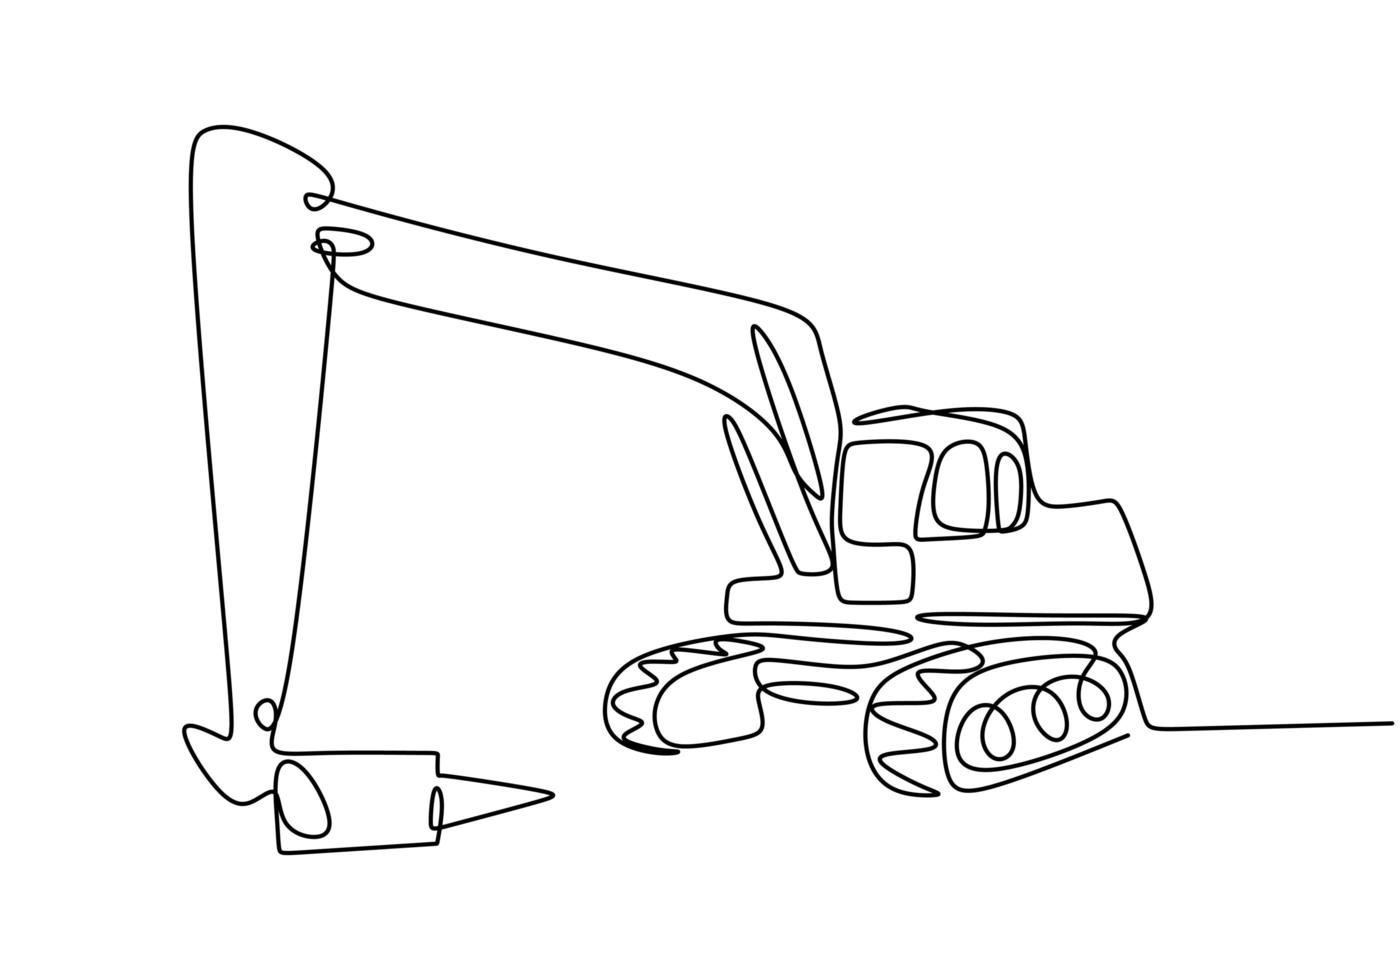 arte de línea continua o dibujo de una línea de vehículo retroexcavadora de construcción. vector